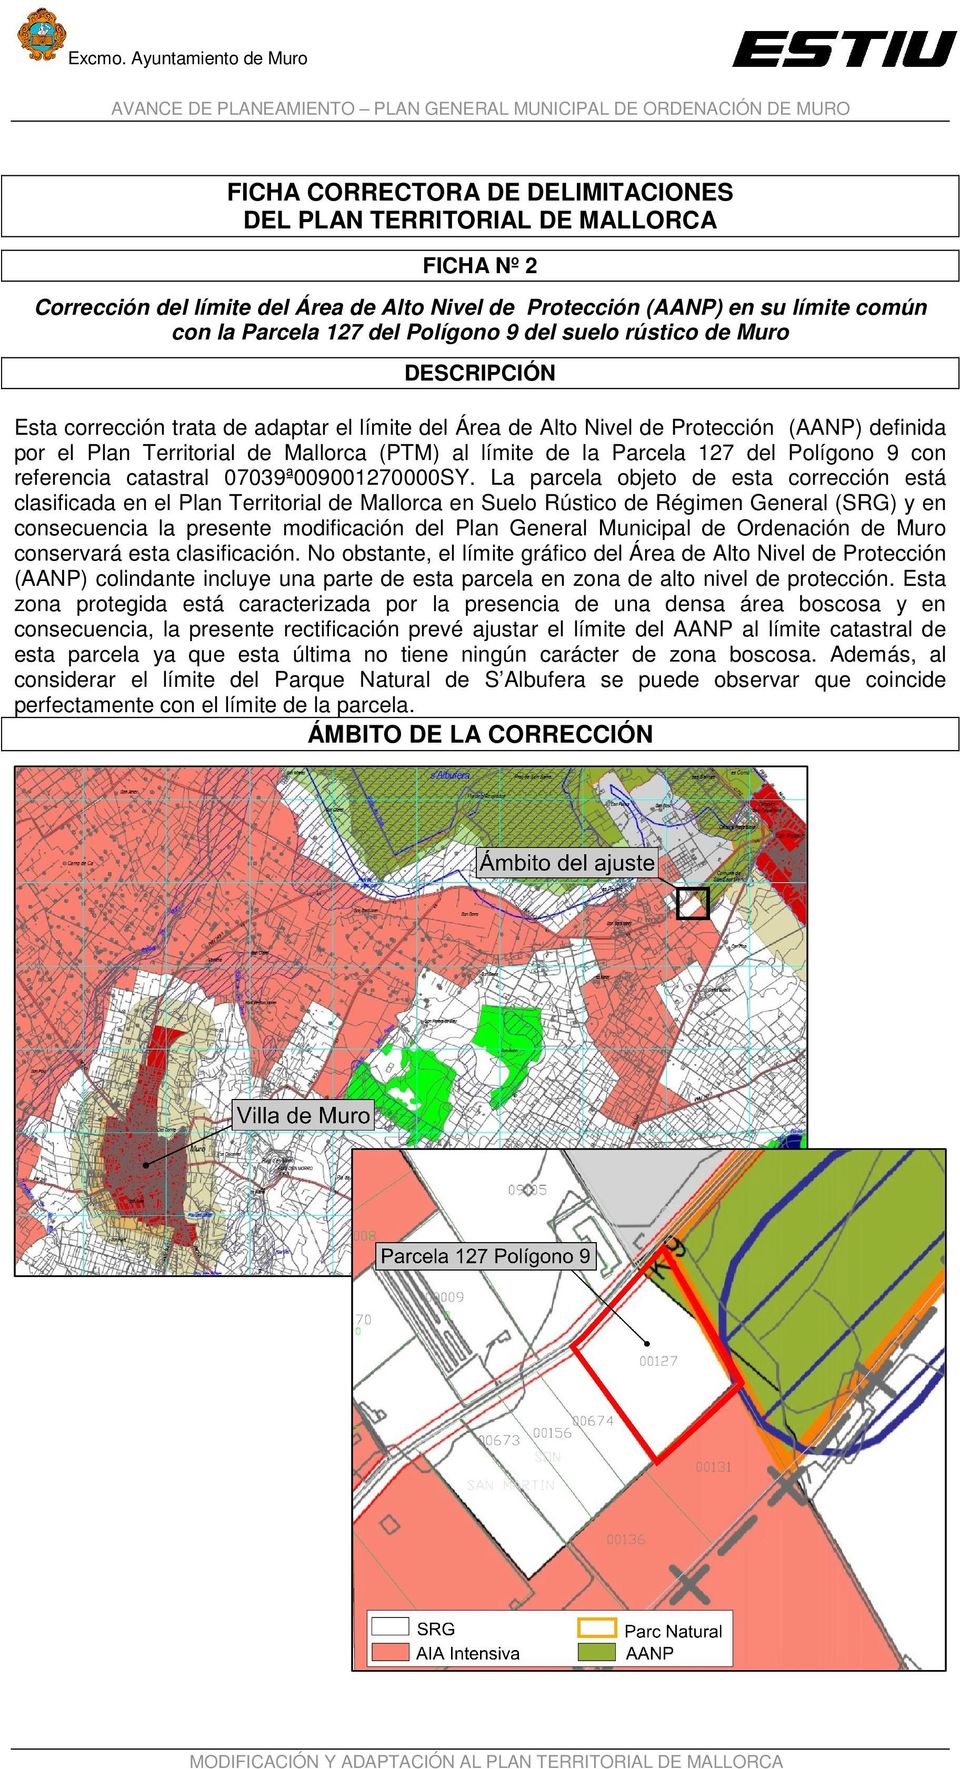 127 del Polígono 9 del suelo rústico de Muro DESCRIPCIÓN Esta corrección trata de adaptar el límite del Área de Alto Nivel de Protección (AANP) definida por el Plan Territorial de Mallorca (PTM) al